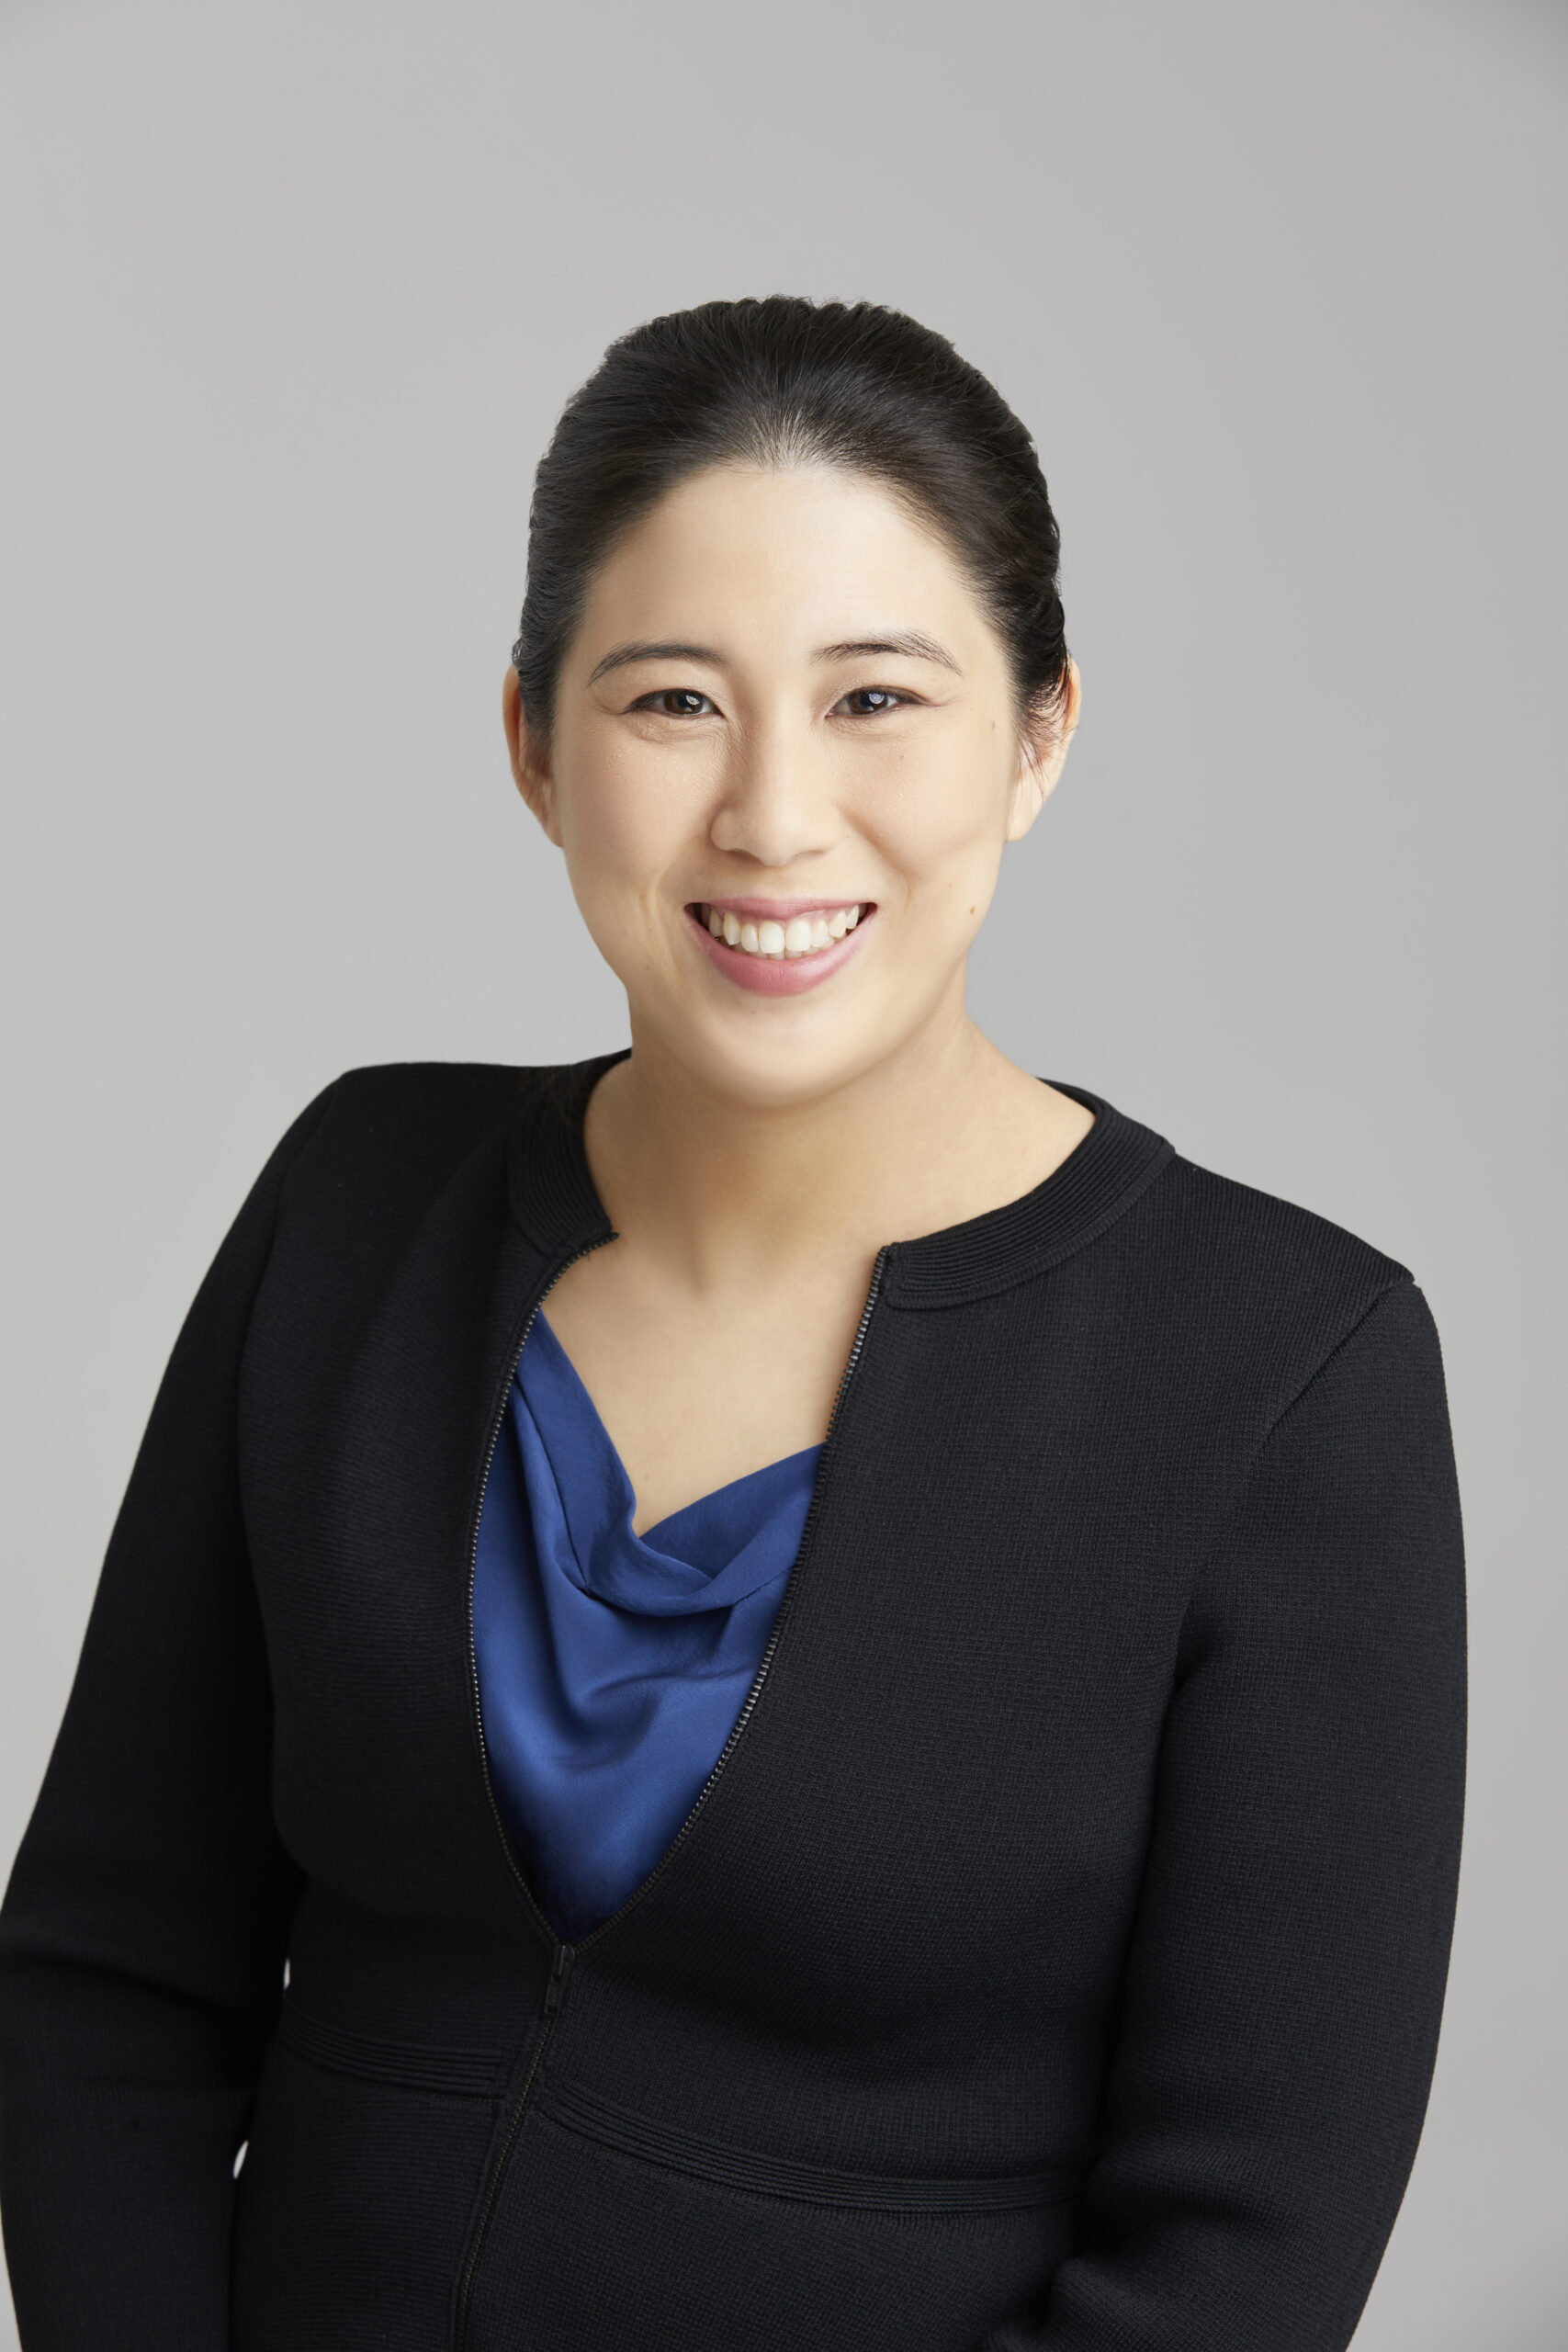 Dr Su-Lin profile picture